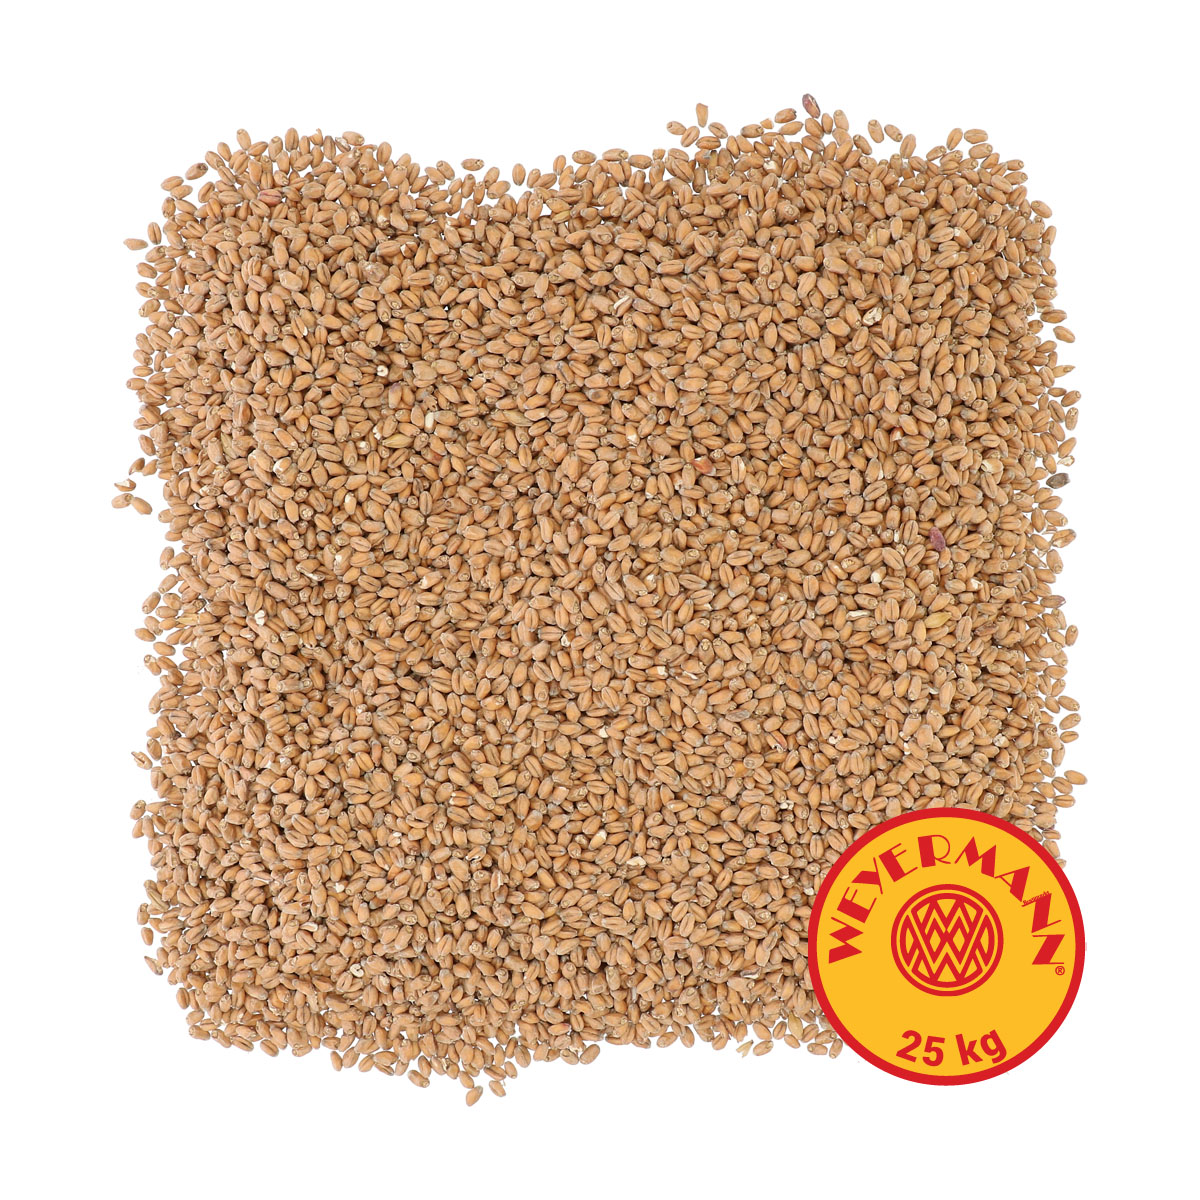 Weyermann® Pale Wheat 25 kg